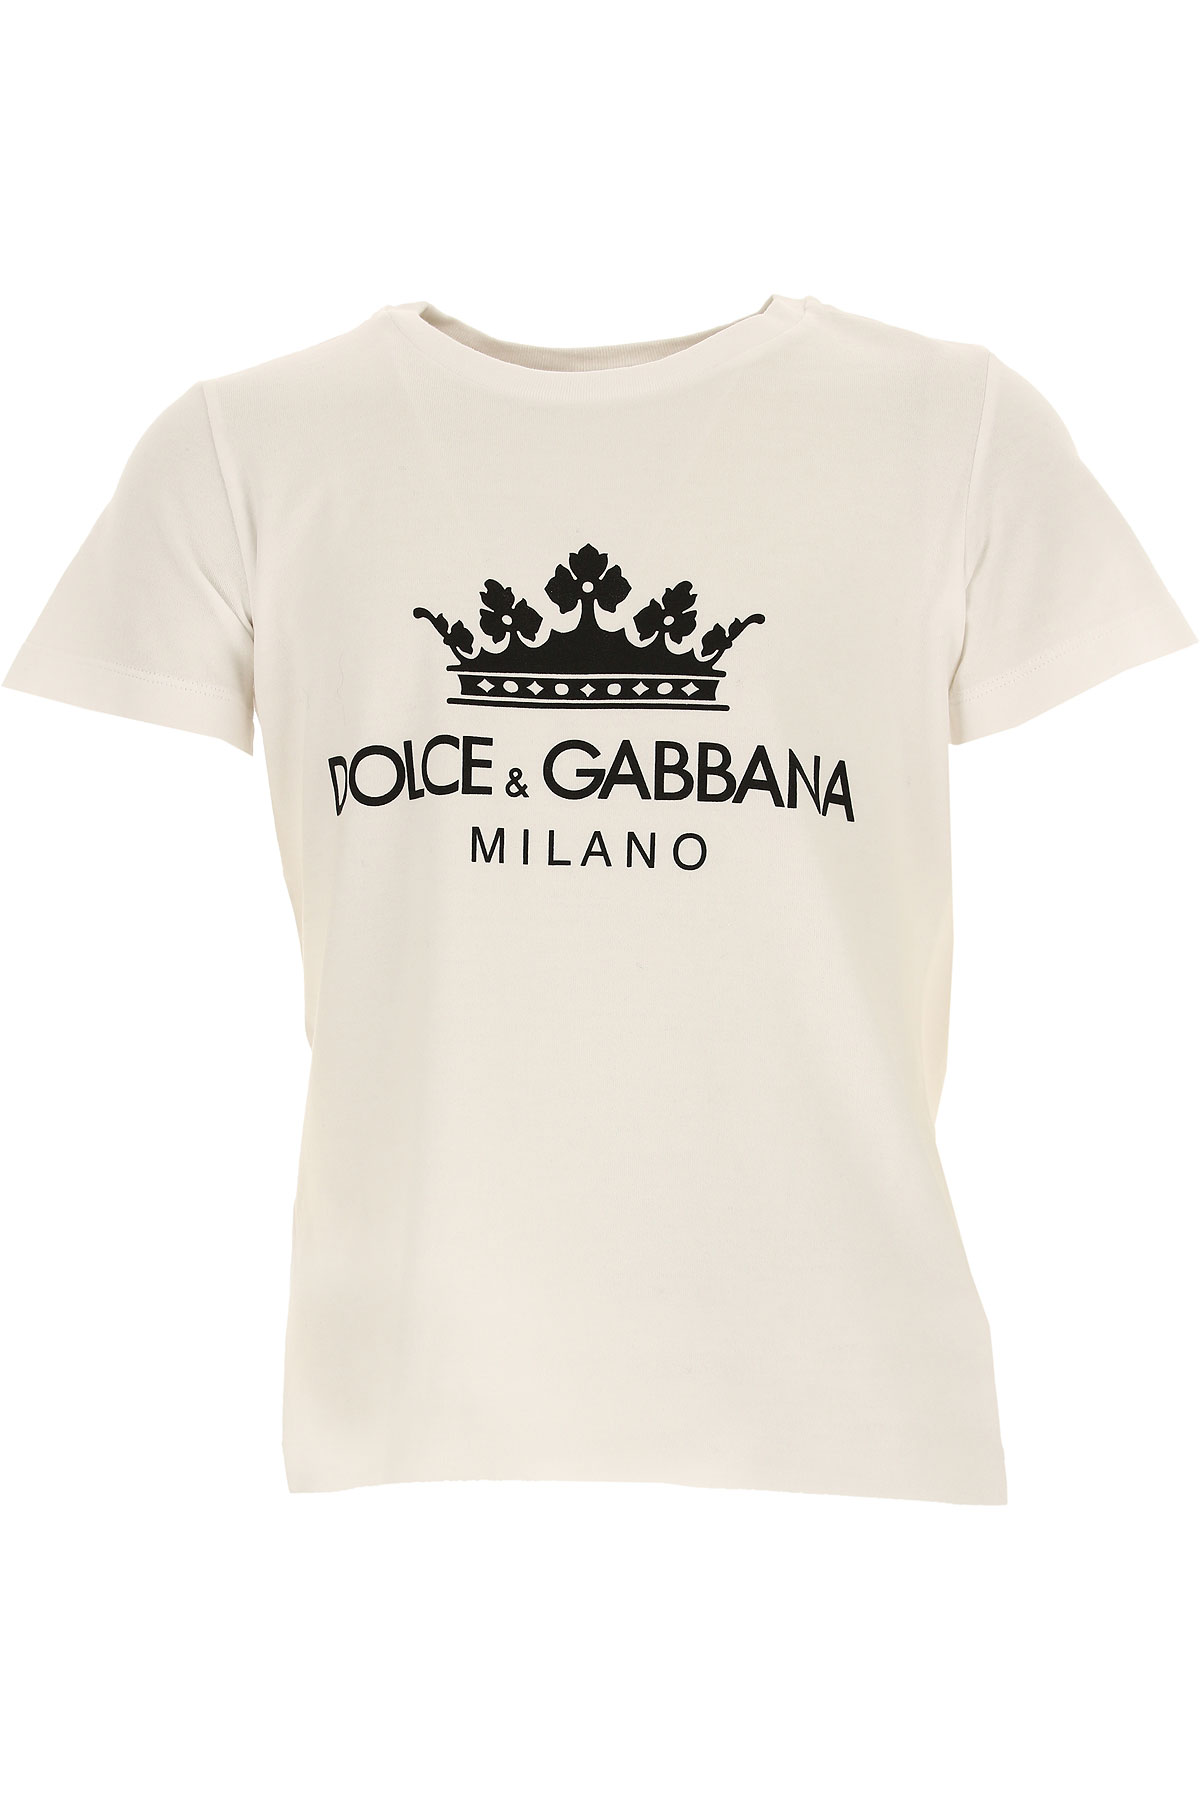 Dolce & Gabbana T-Shirt Enfant pour Fille, Blanc, Coton, 2017, 10Y 2Y 3Y 4Y 5Y 6Y 8Y